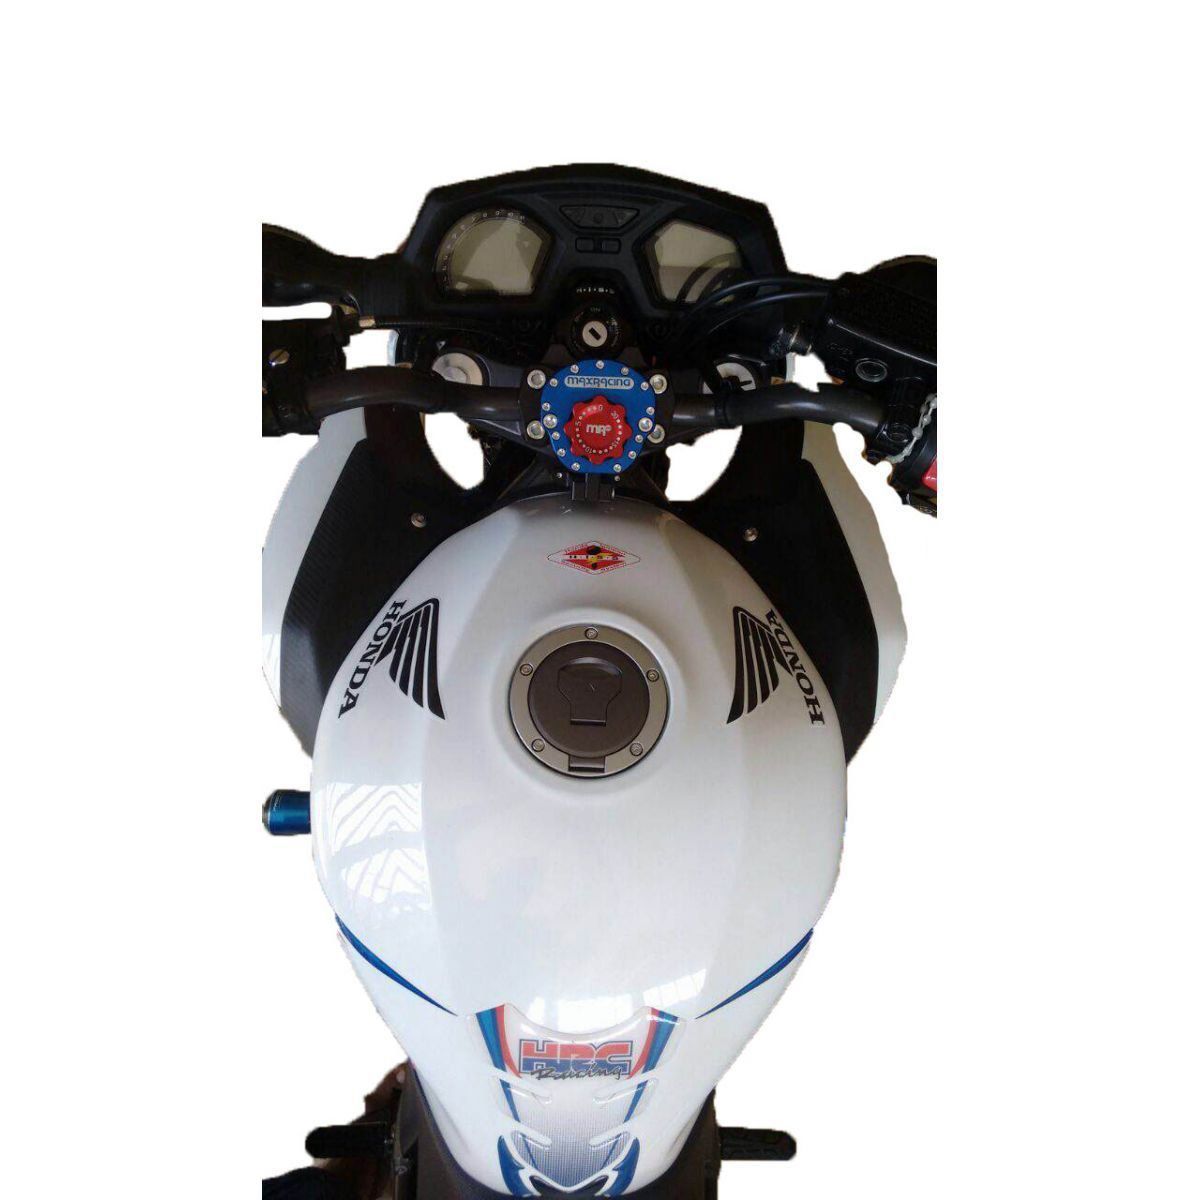 Amortecedor de Direção DL 1000 V Strom  Max Racing